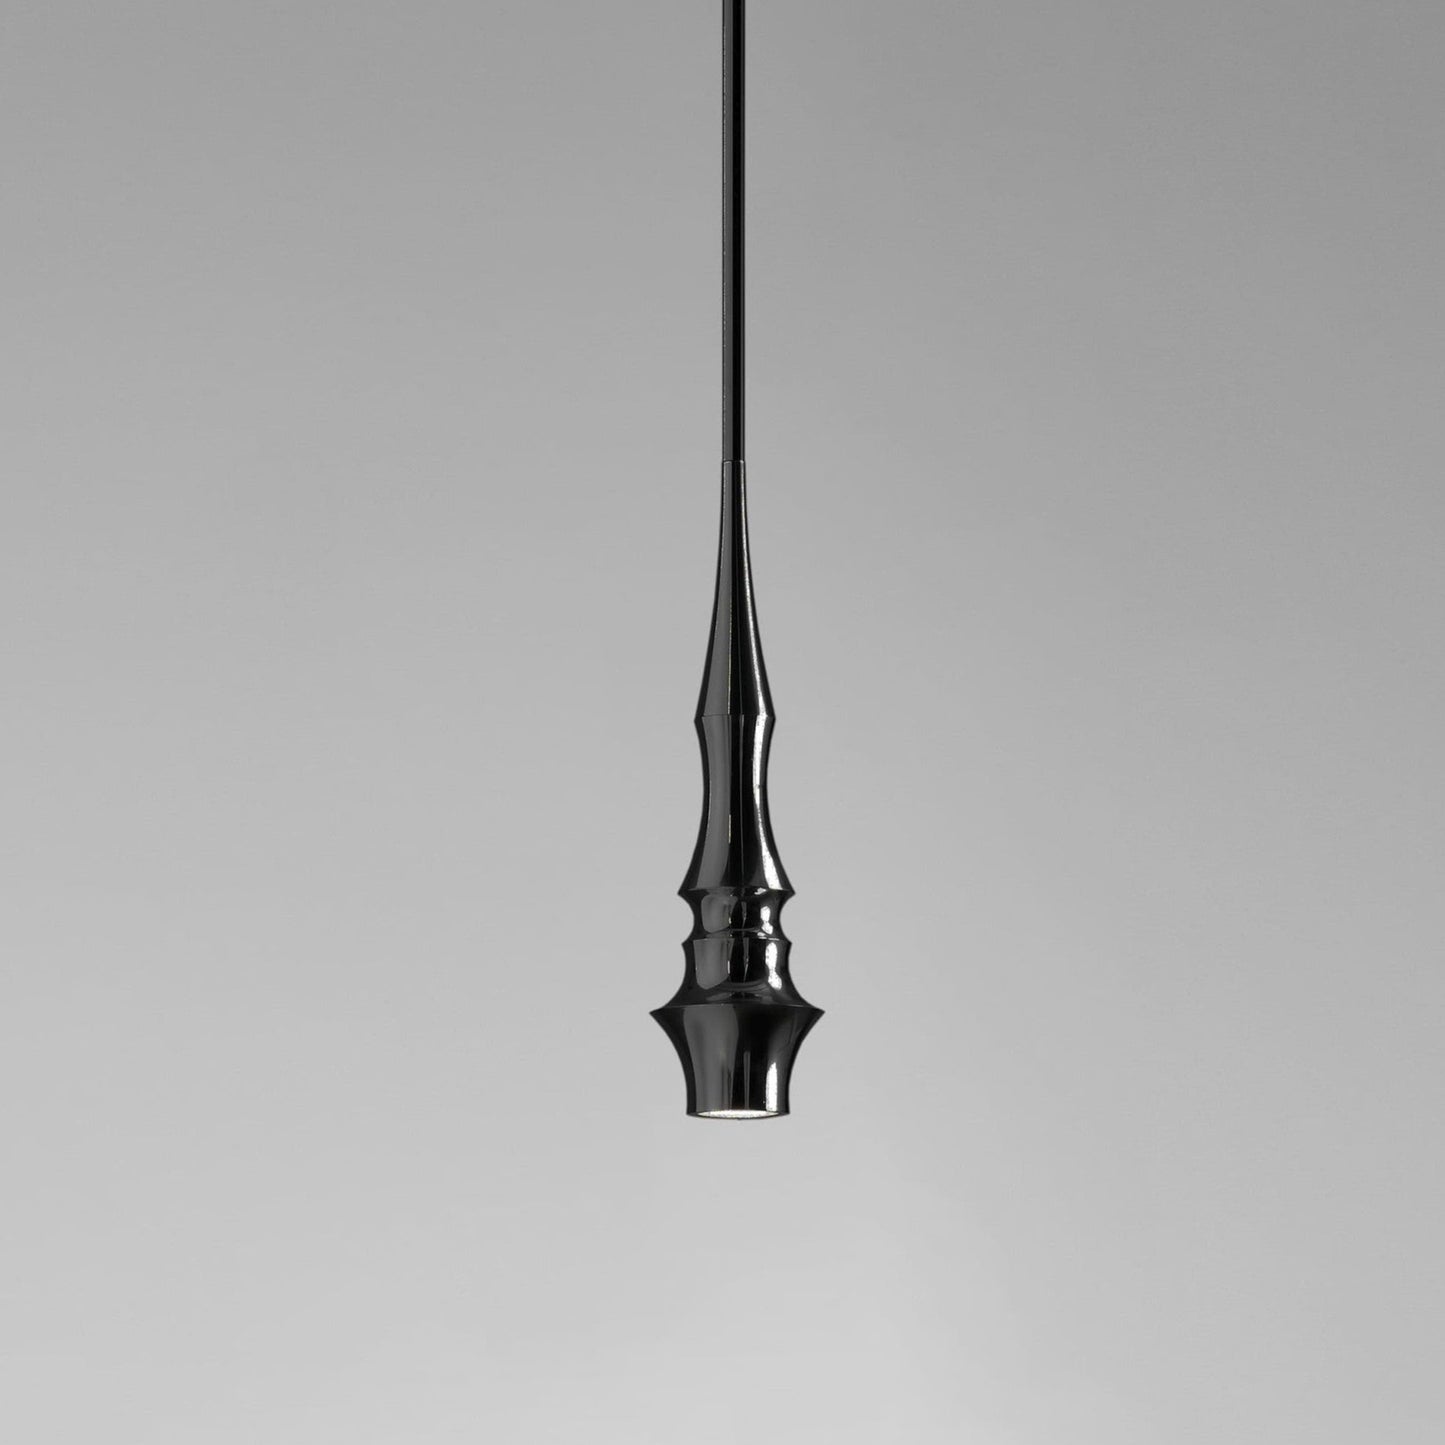 matt black slim hanging lights dining table light